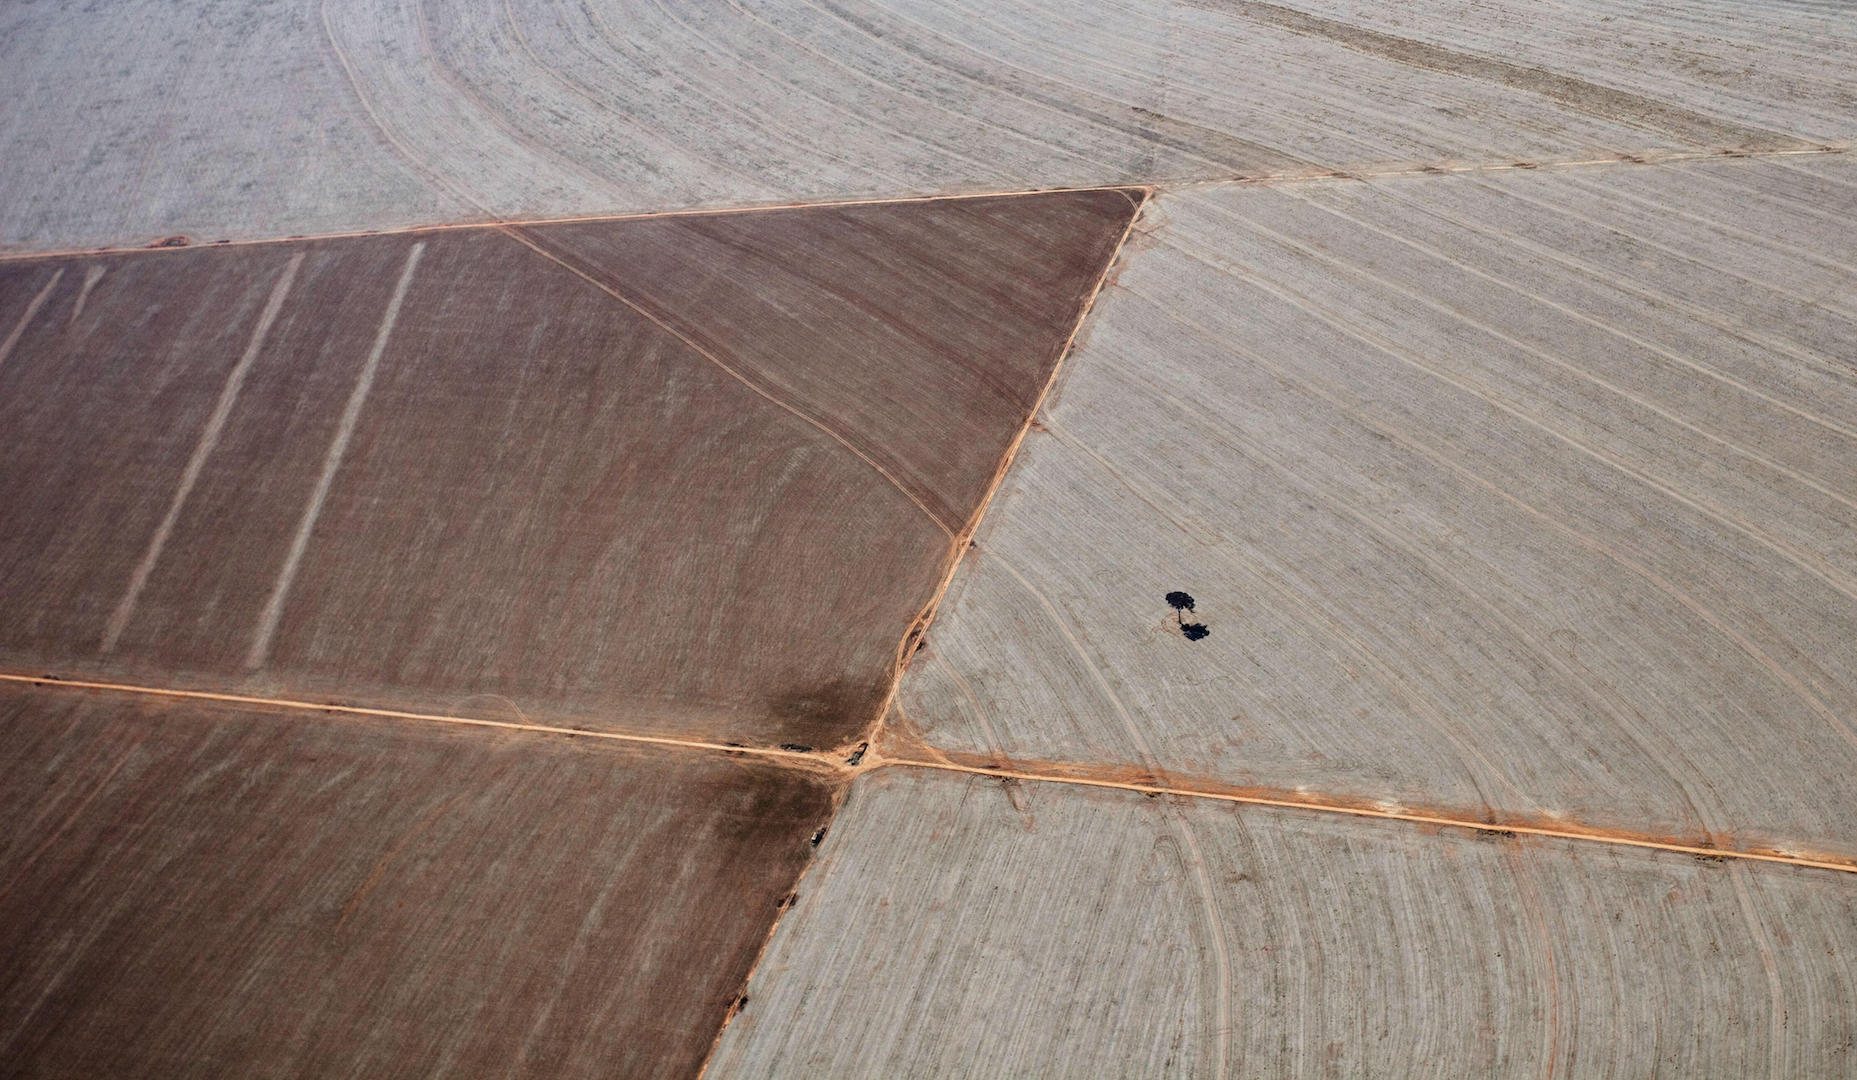 Vista aérea de una plantación de soja en Canarana, estado de Mato Grosso